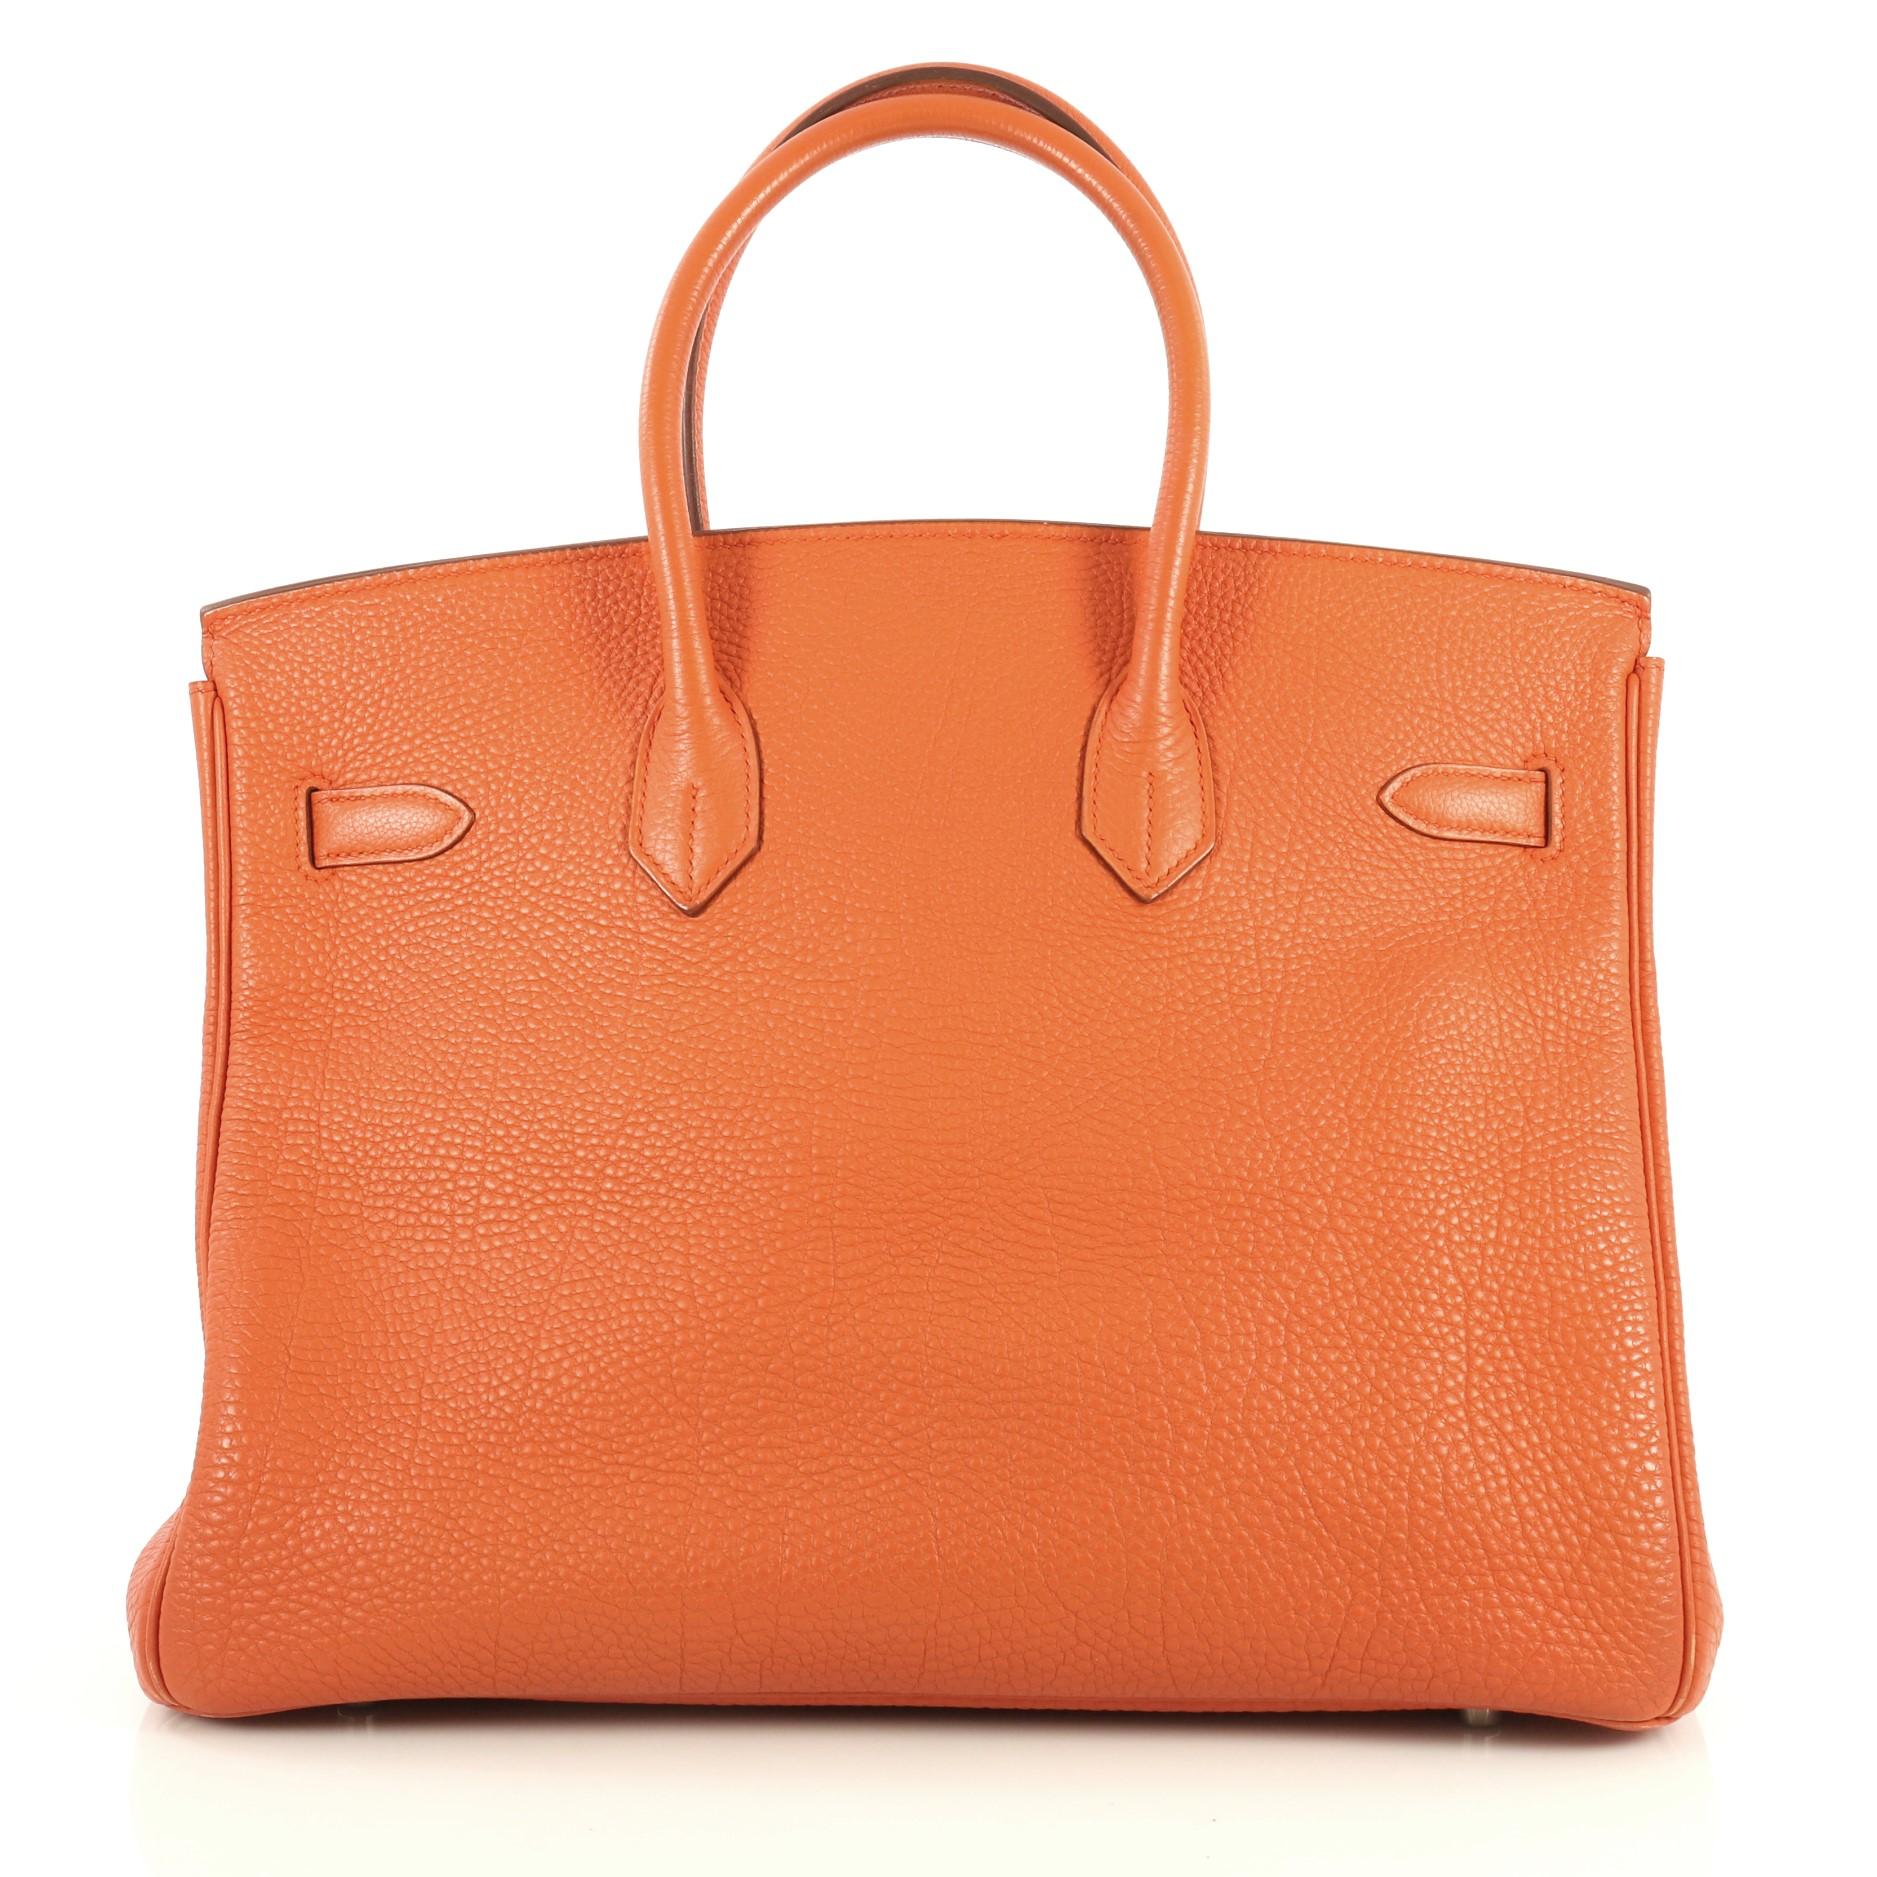 Women's Hermes Birkin Handbag Orange H Togo with Palladium Hardware 35